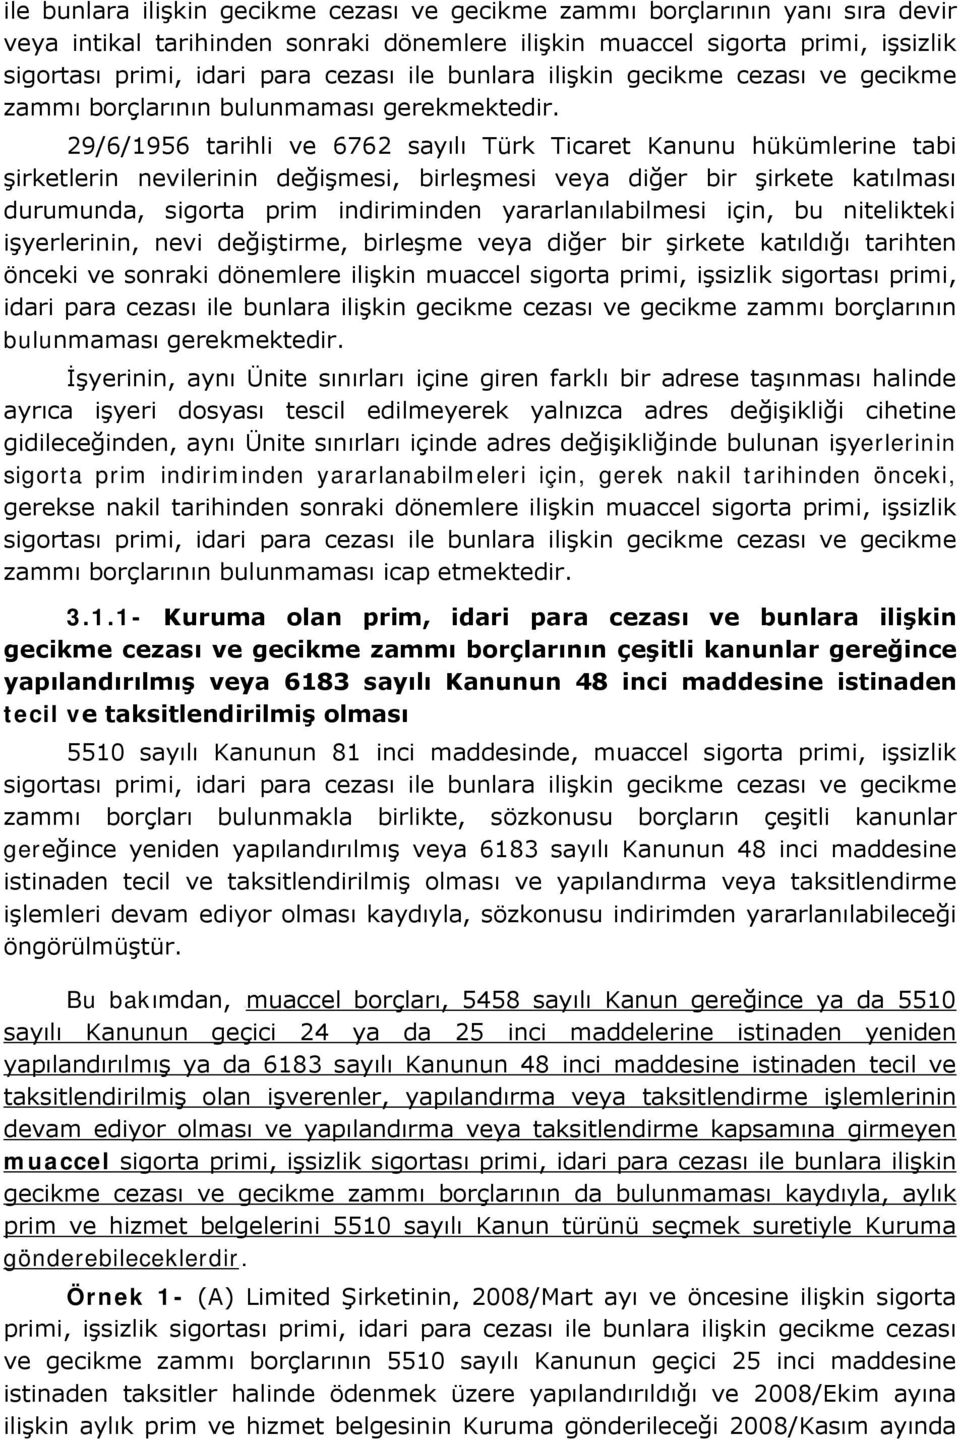 29/6/1956 tarihli ve 6762 sayılı Türk Ticaret Kanunu hükümlerine tabi şirketlerin nevilerinin değişmesi, birleşmesi veya diğer bir şirkete katılması durumunda, sigorta prim indiriminden